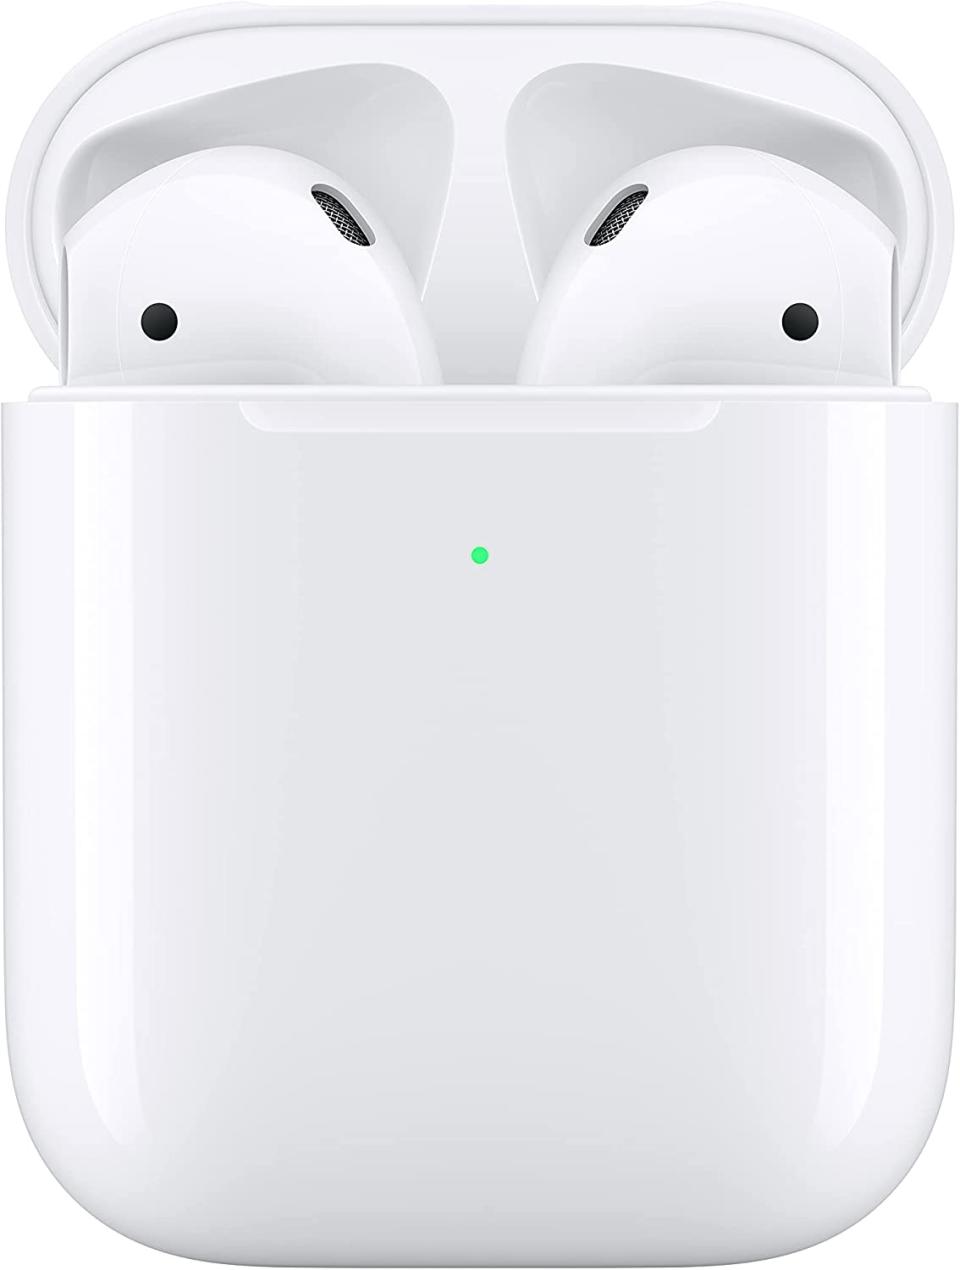 Apple AirPods (2nd Gen) wireless earphones inside wireless charging case on white background